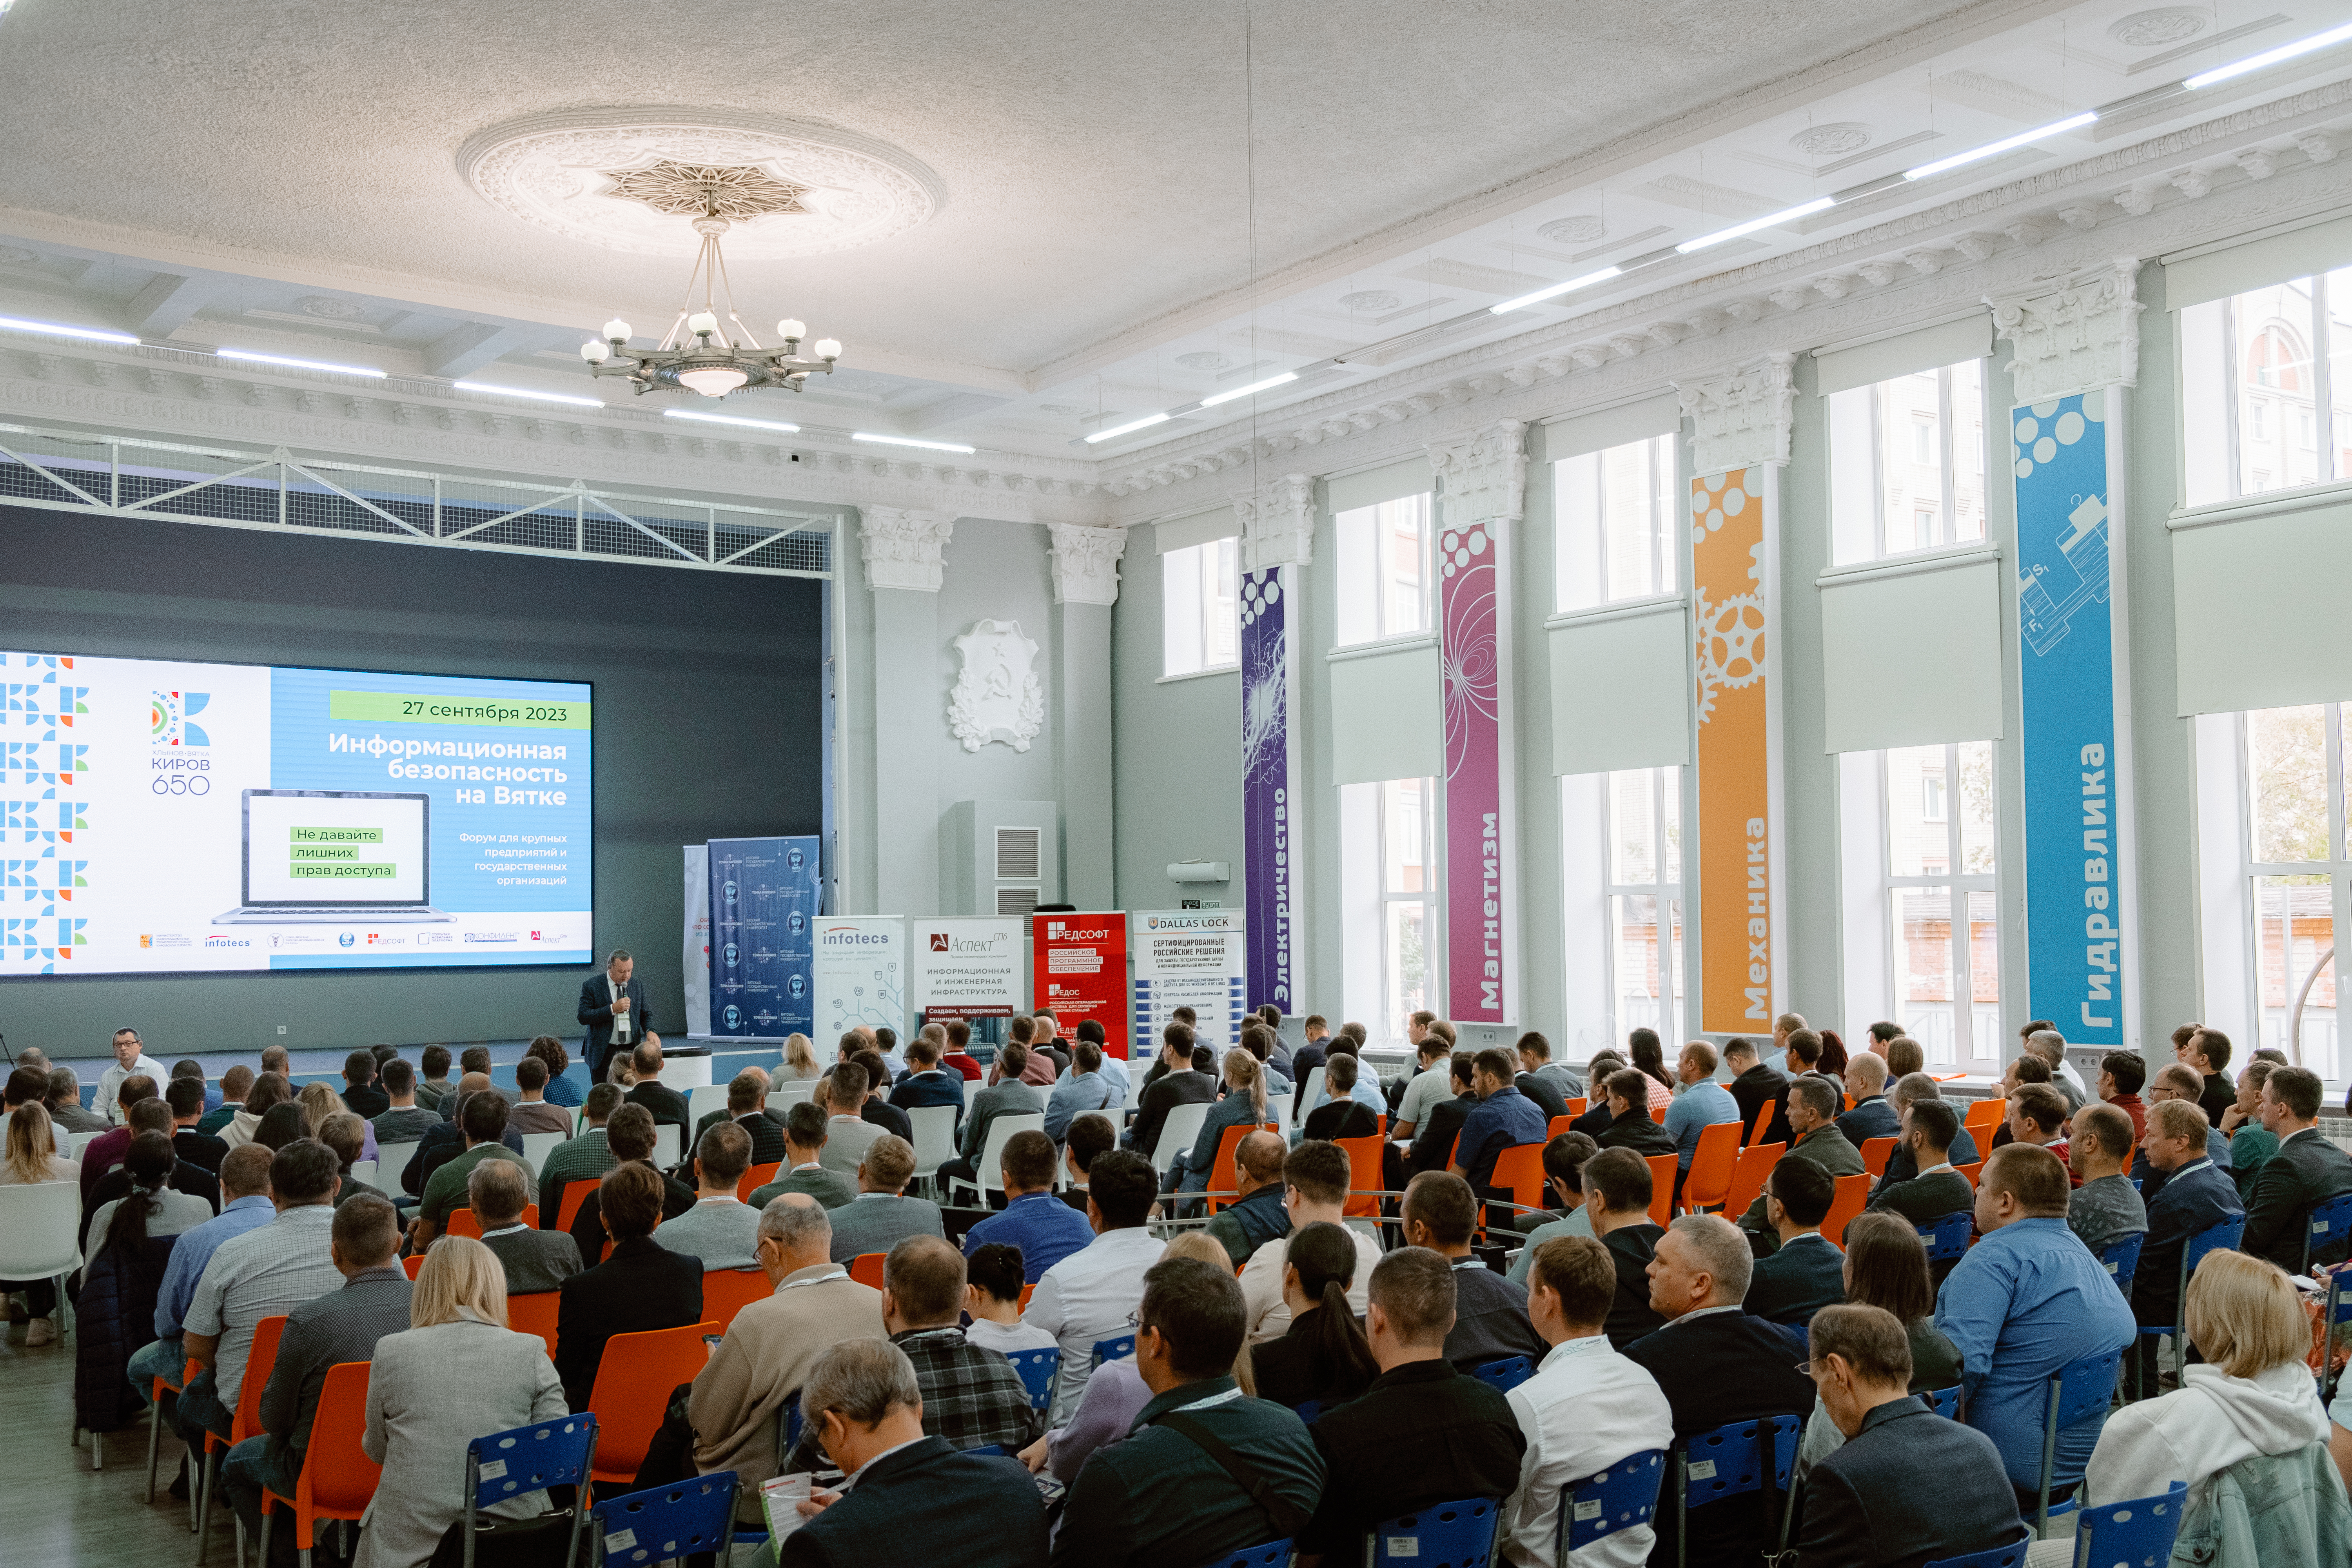 Форум «Информационная безопасность на Вятке 2023» собрал более 150 участников